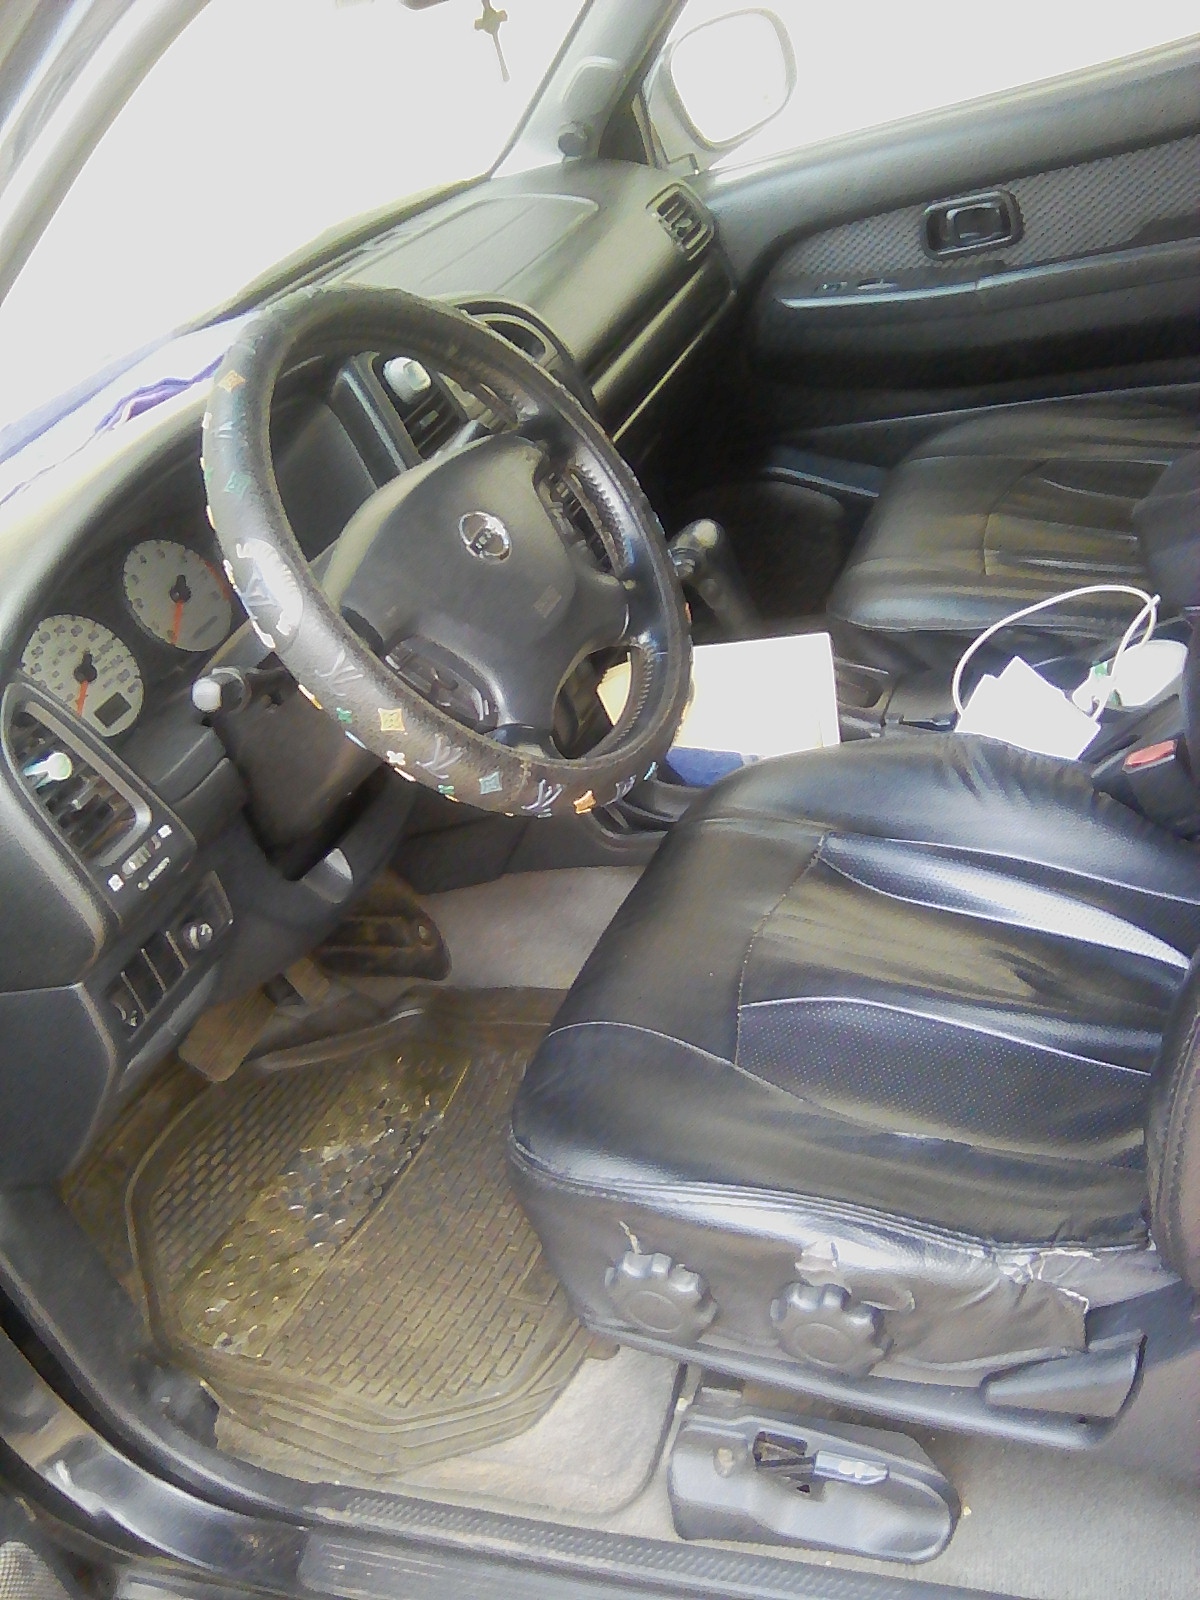 Buy 2003 used Nissan Pathfinder Enugu